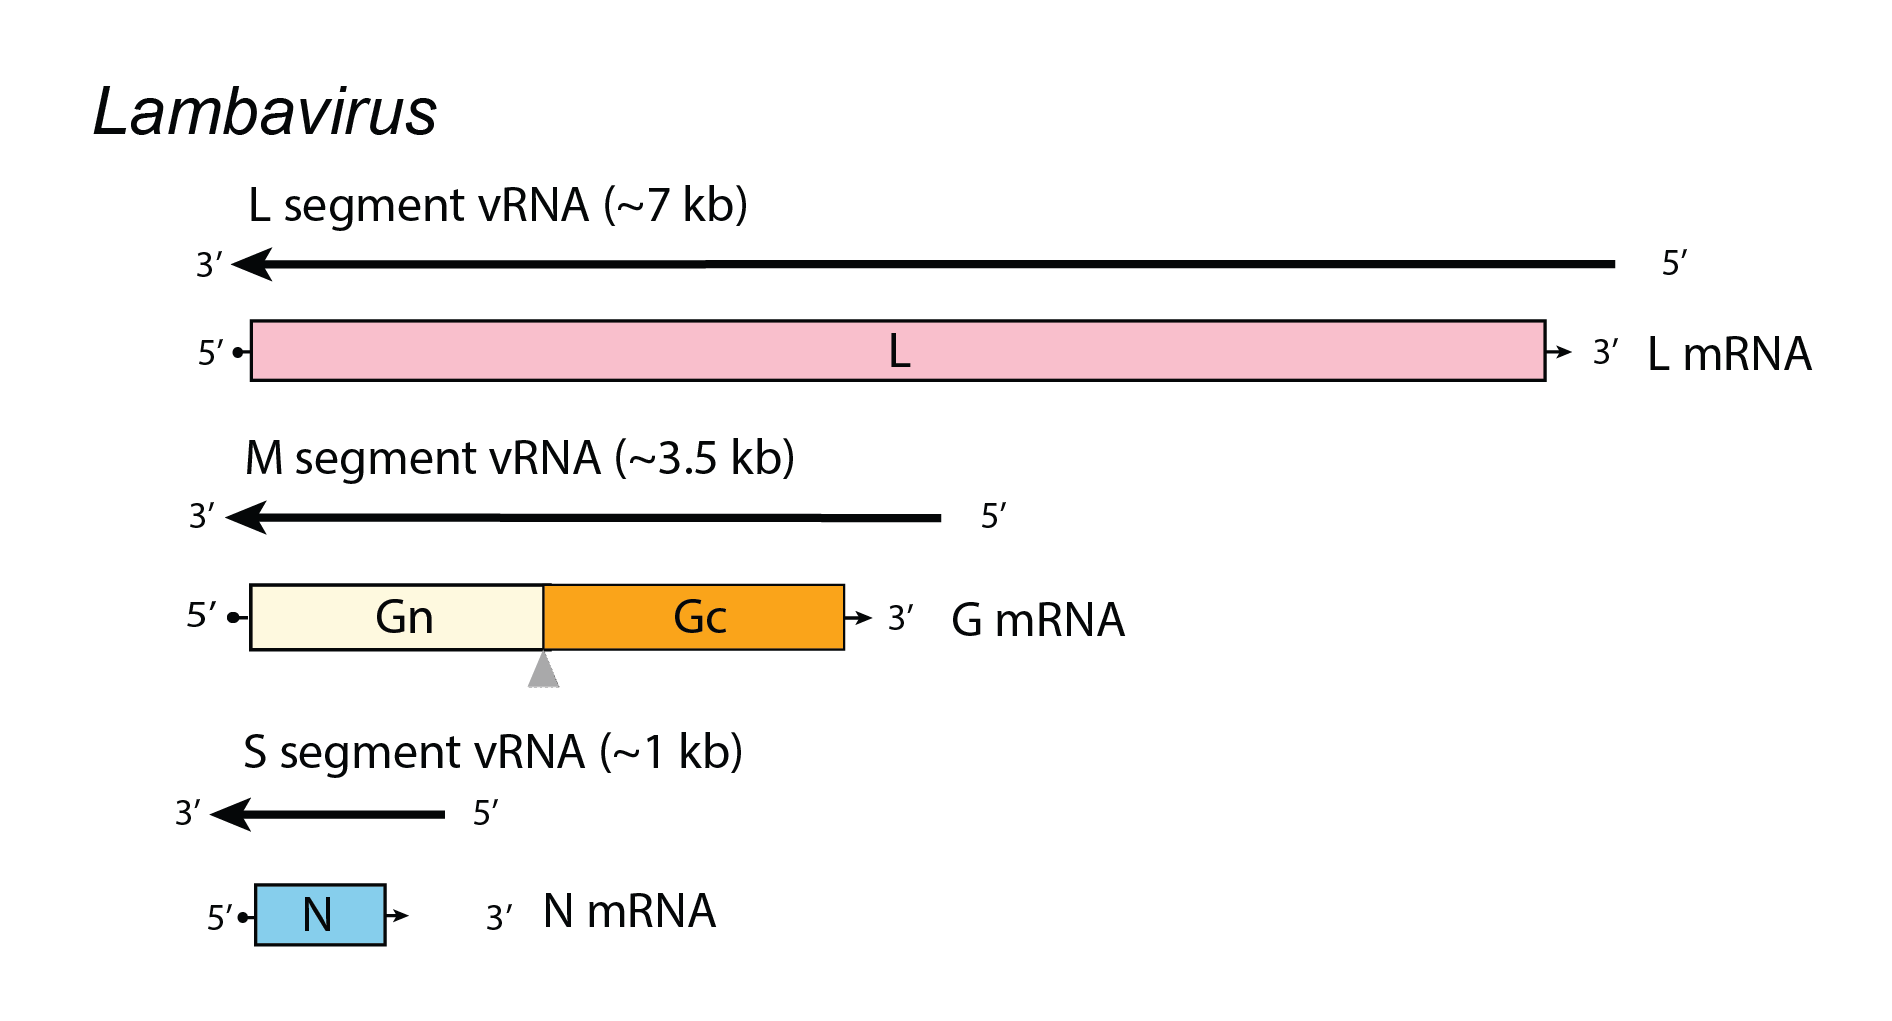 Lambavirus genome organisation